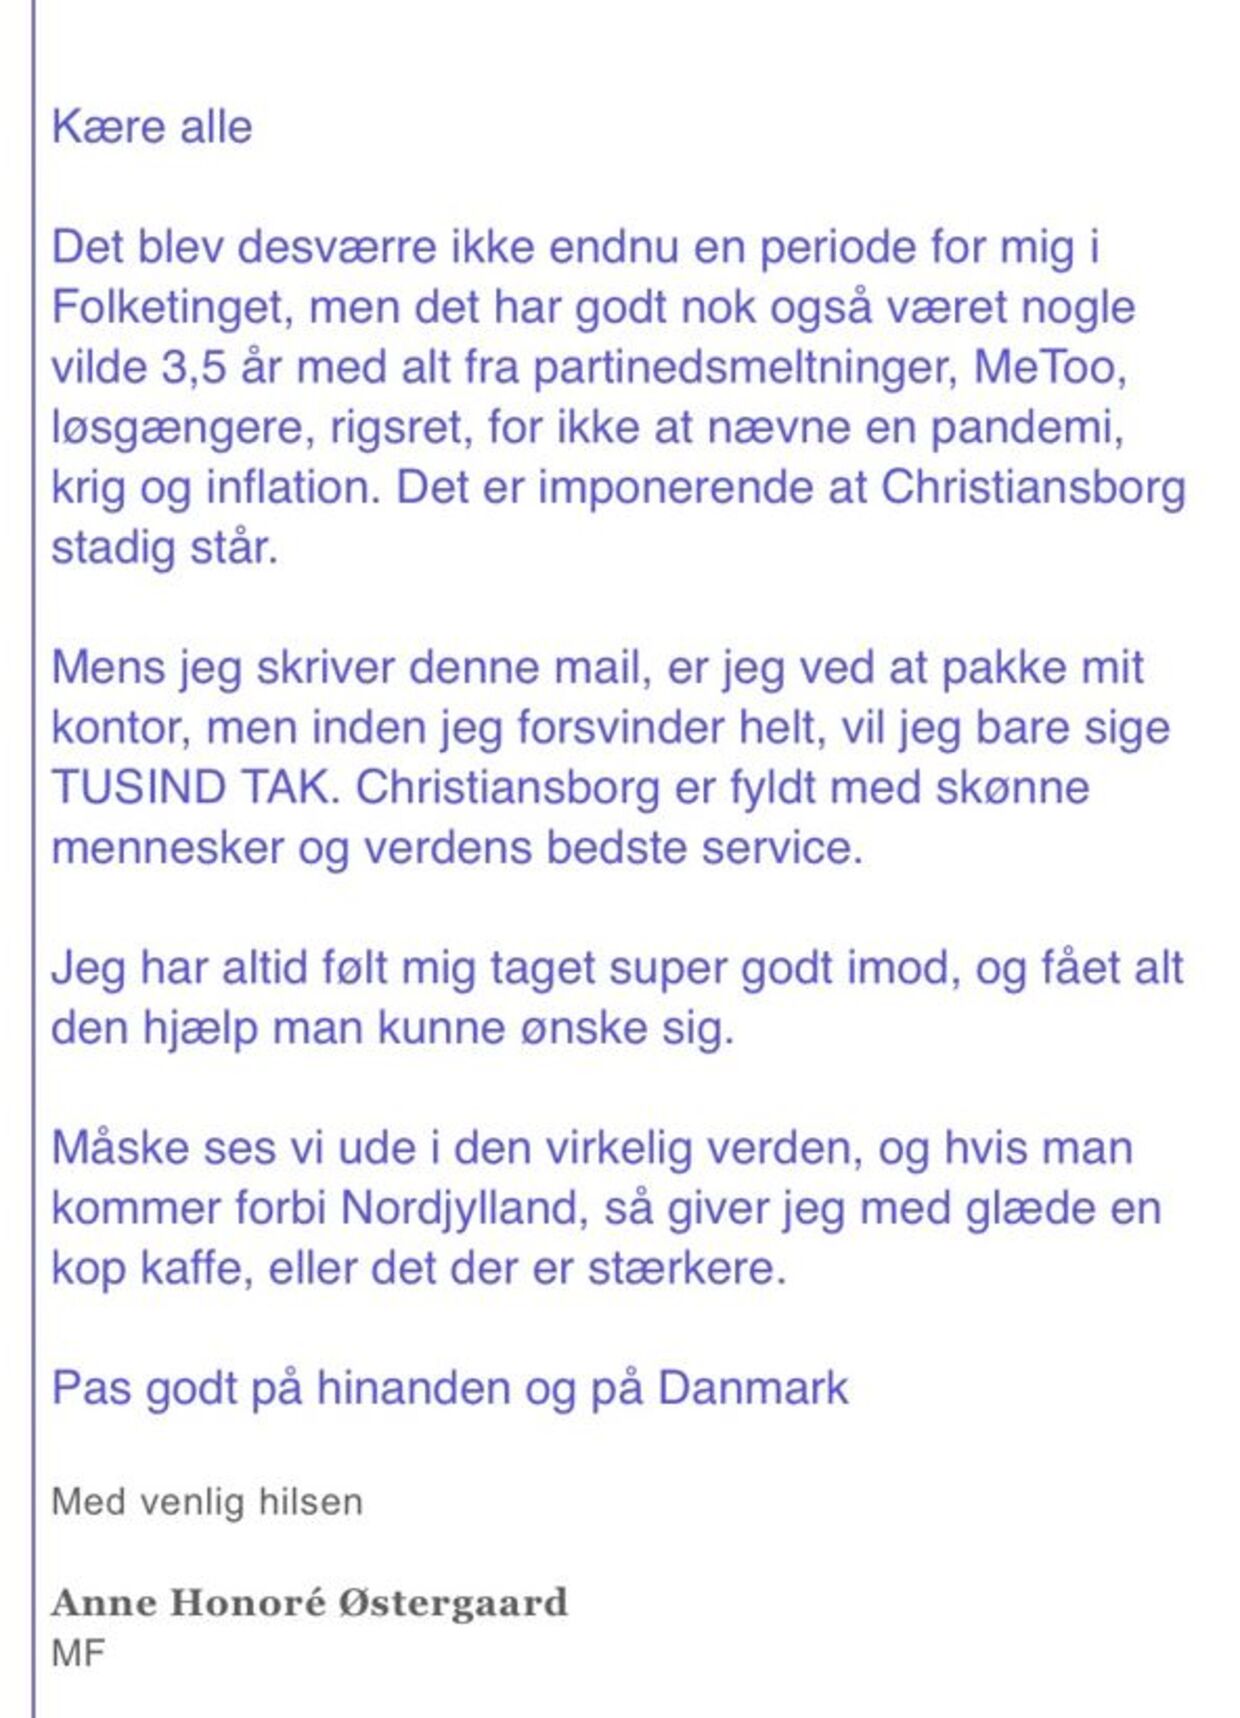 Anne Honoré Østergaards farvel-mail til sine kollegaer.